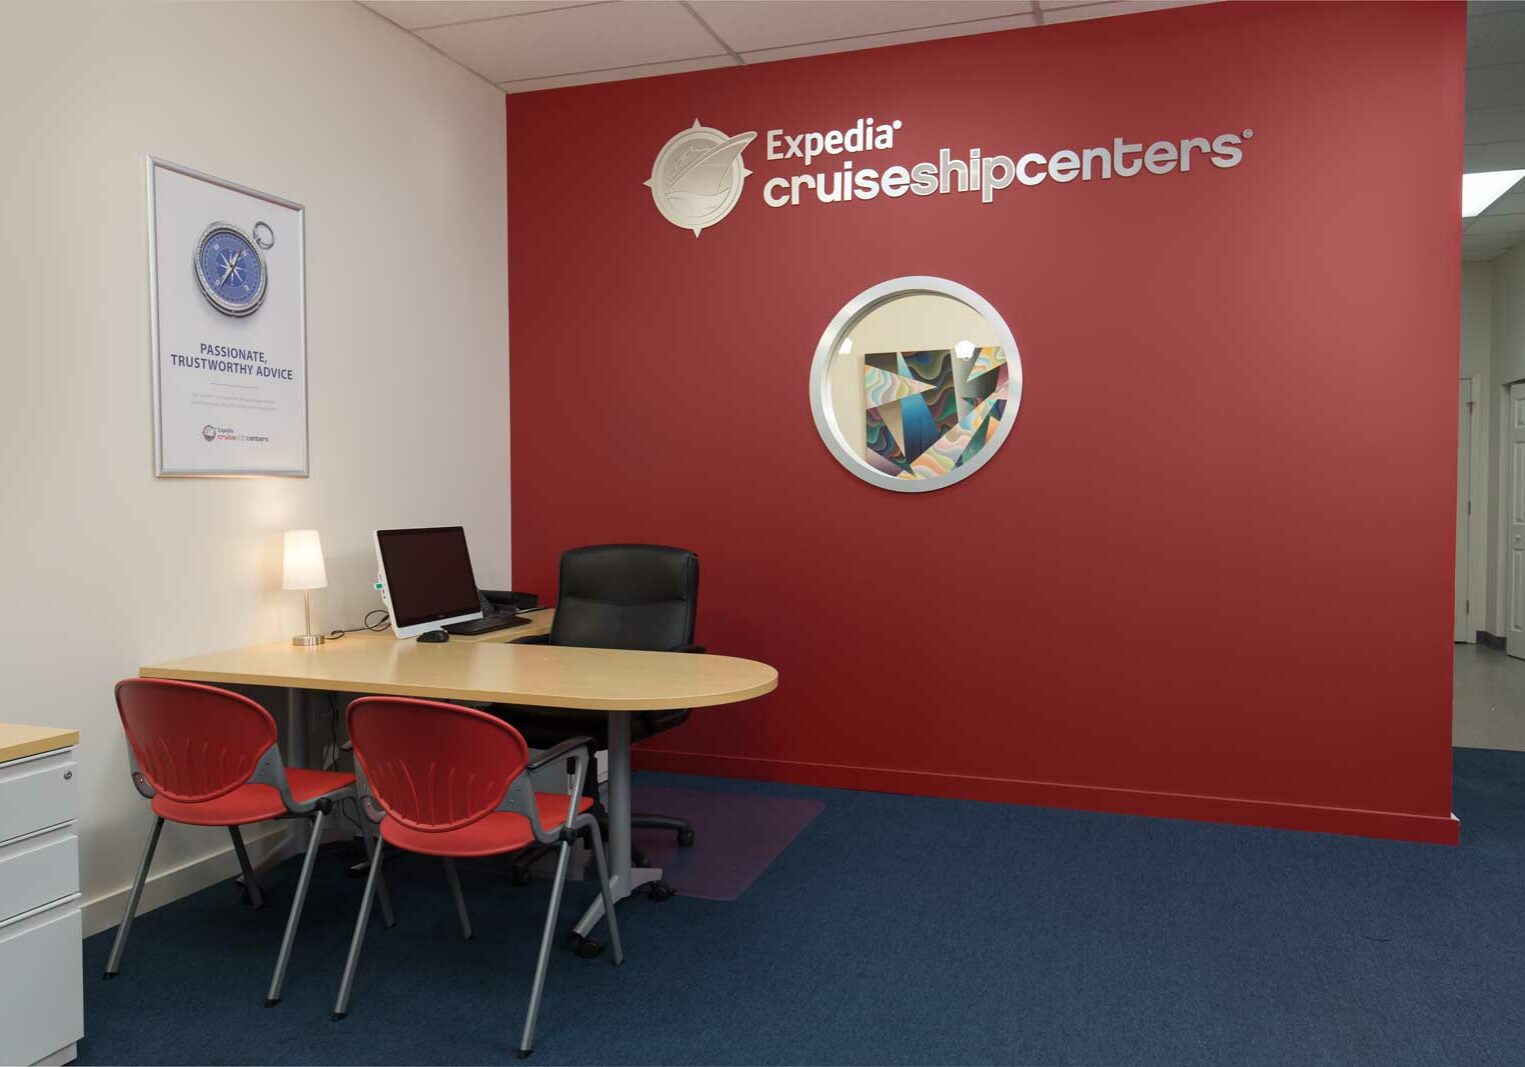 Expedia-Cruiseshipcenters-3